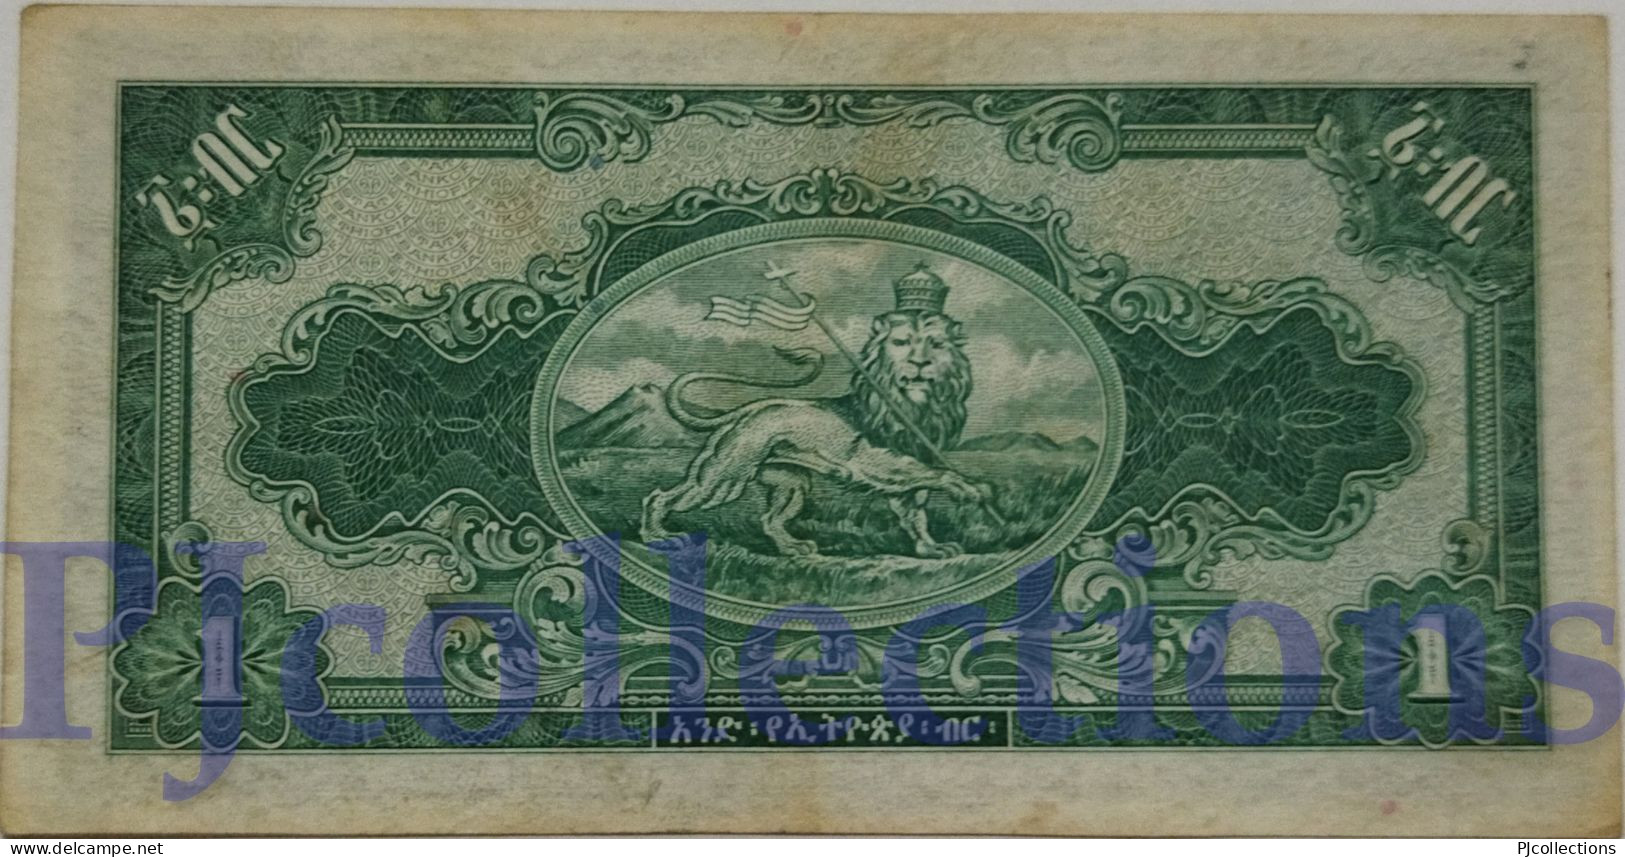 ETHIOPIA 1 DOLLAR 1945 PICK 12b AU+ W/LIGHT STAINS - Ethiopië